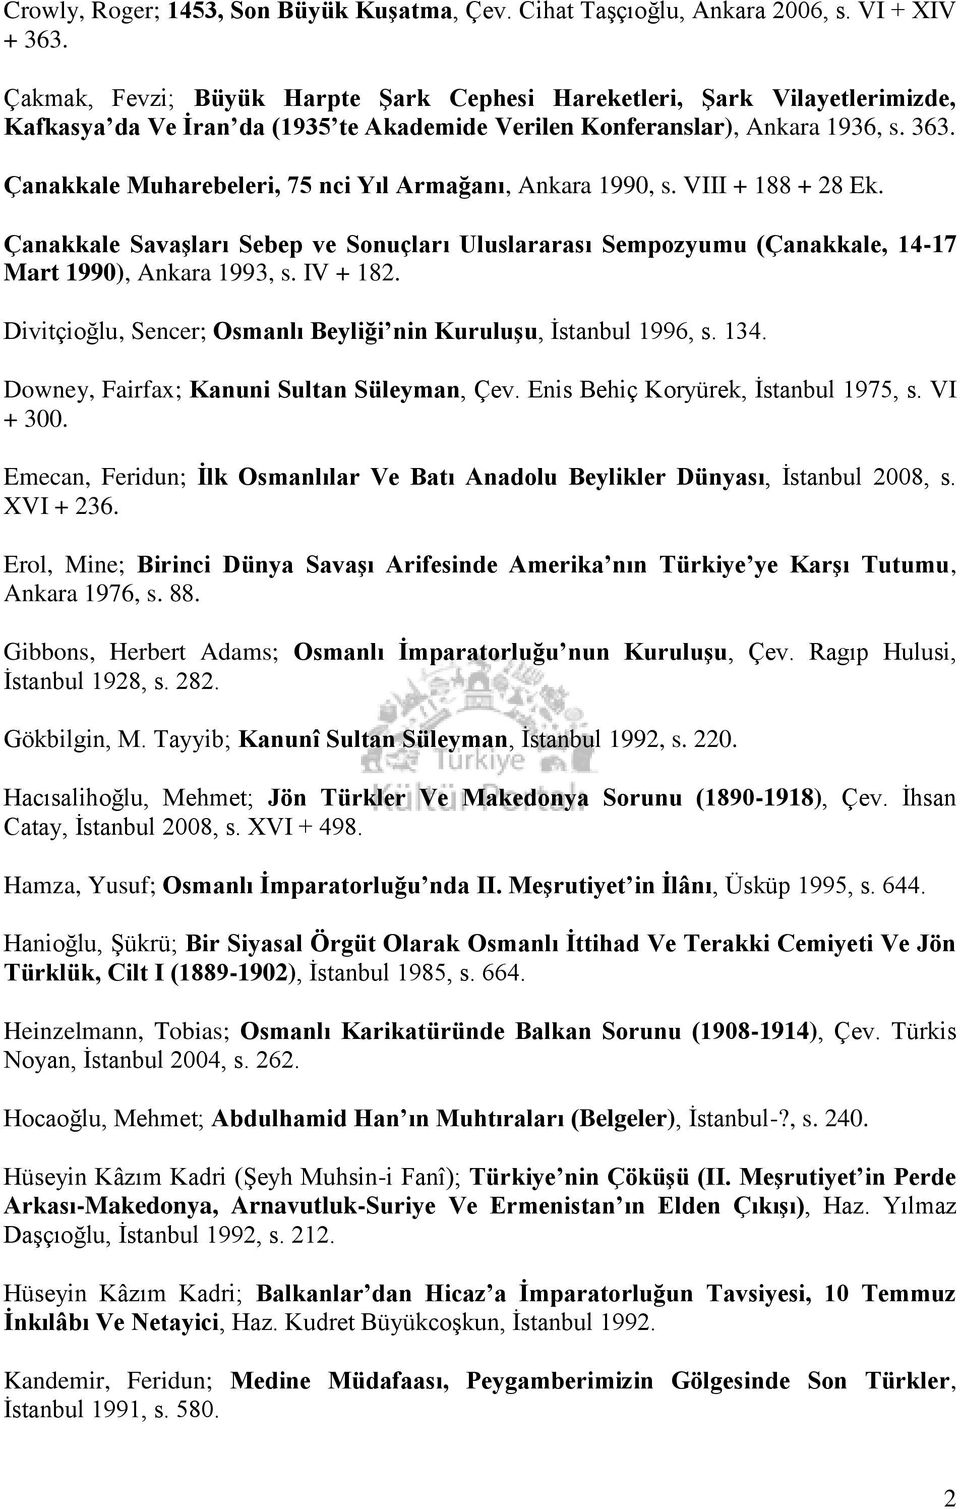 Çanakkale Muharebeleri, 75 nci Yıl Armağanı, Ankara 1990, s. VIII + 188 + 28 Ek. Çanakkale SavaĢları Sebep ve Sonuçları Uluslararası Sempozyumu (Çanakkale, 14-17 Mart 1990), Ankara 1993, s. IV + 182.